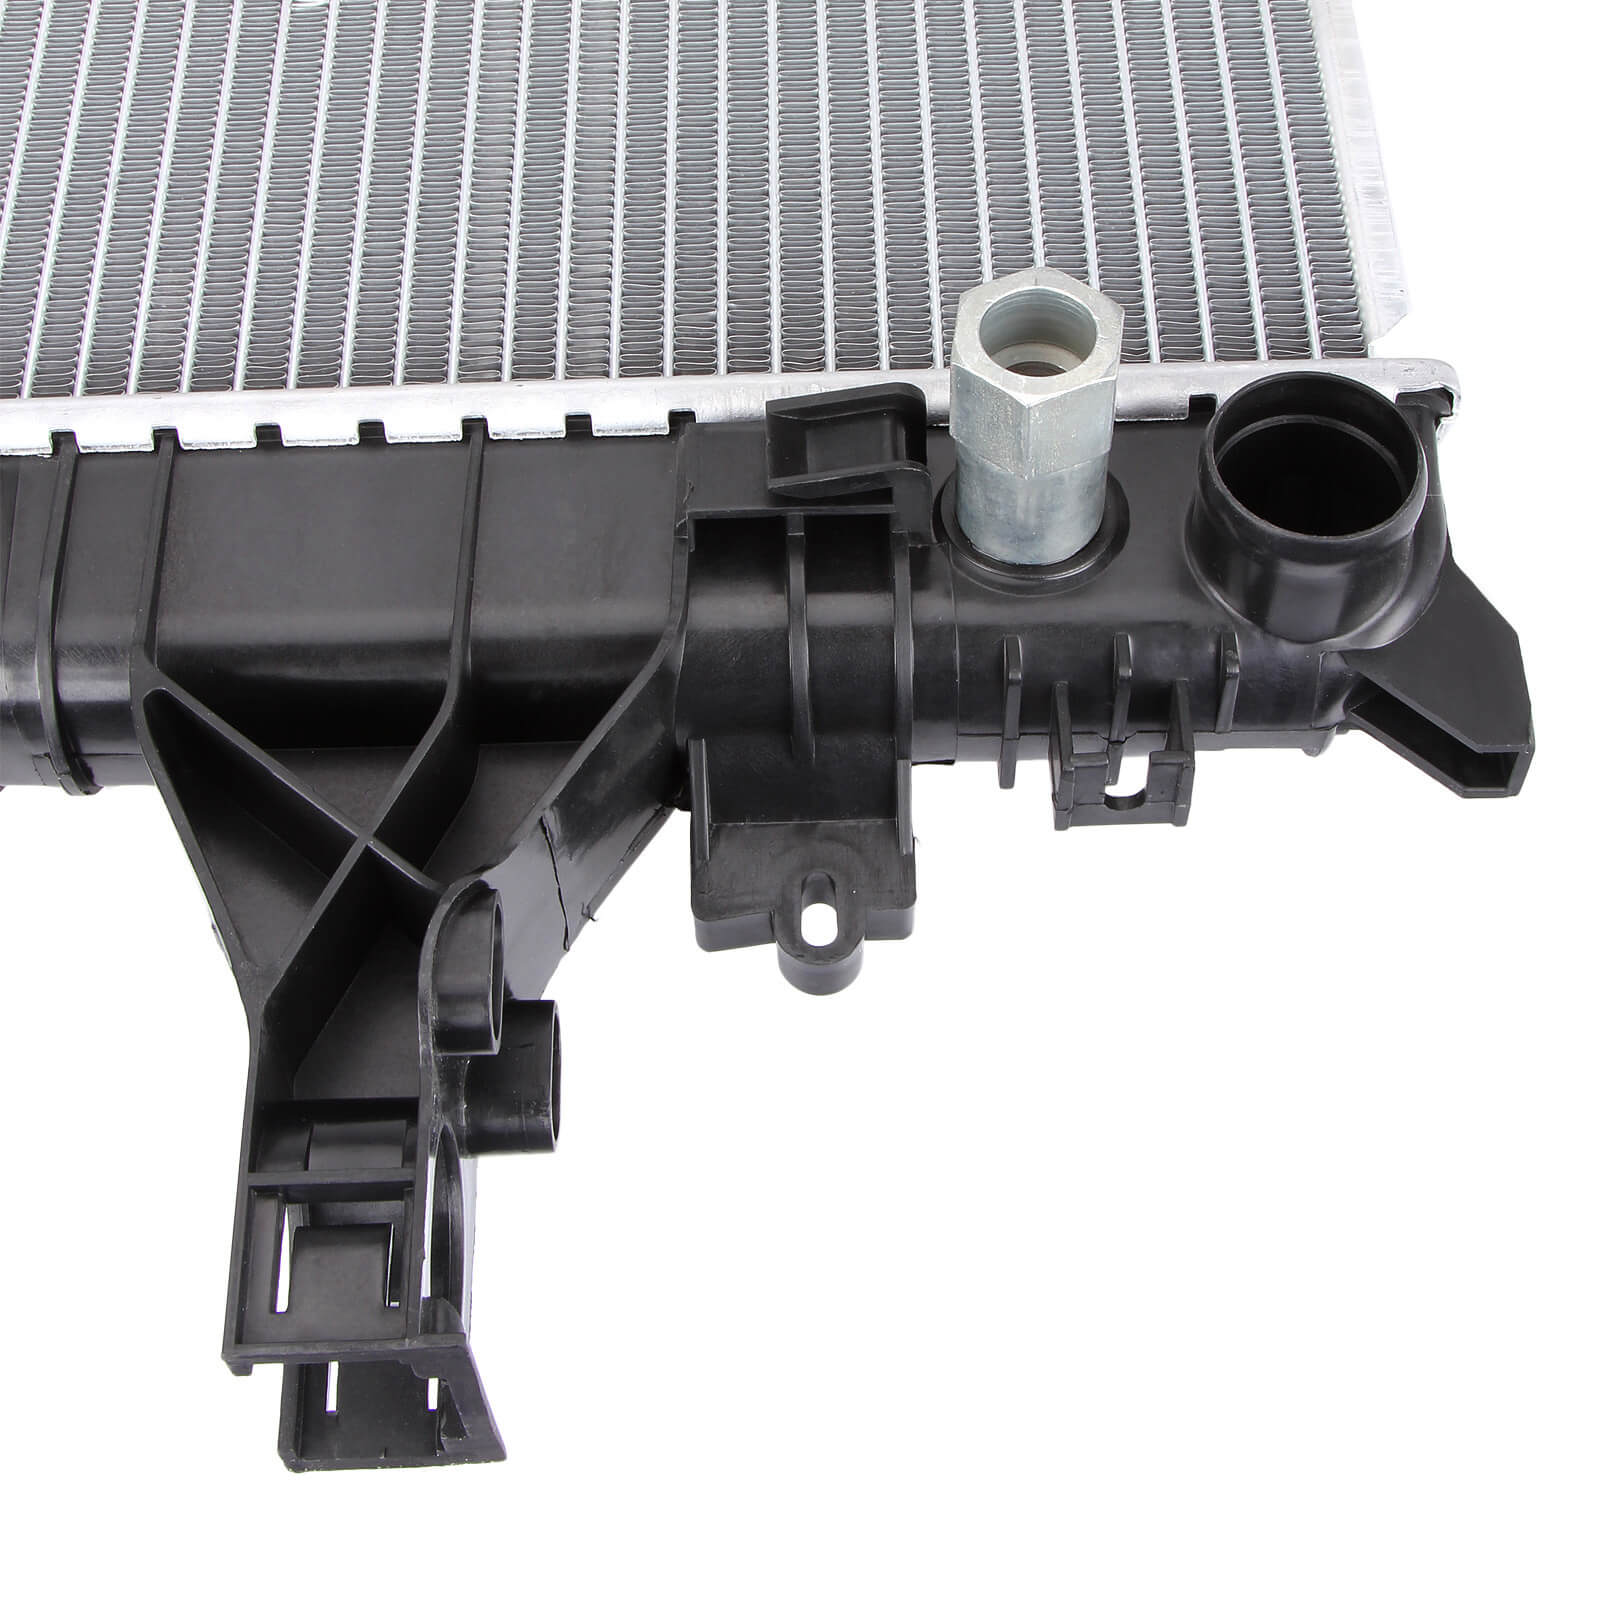 Dromedary-High Quality New 2688 Full Aluminum Radiator For Lexus Rx 330 33-202-v6-5